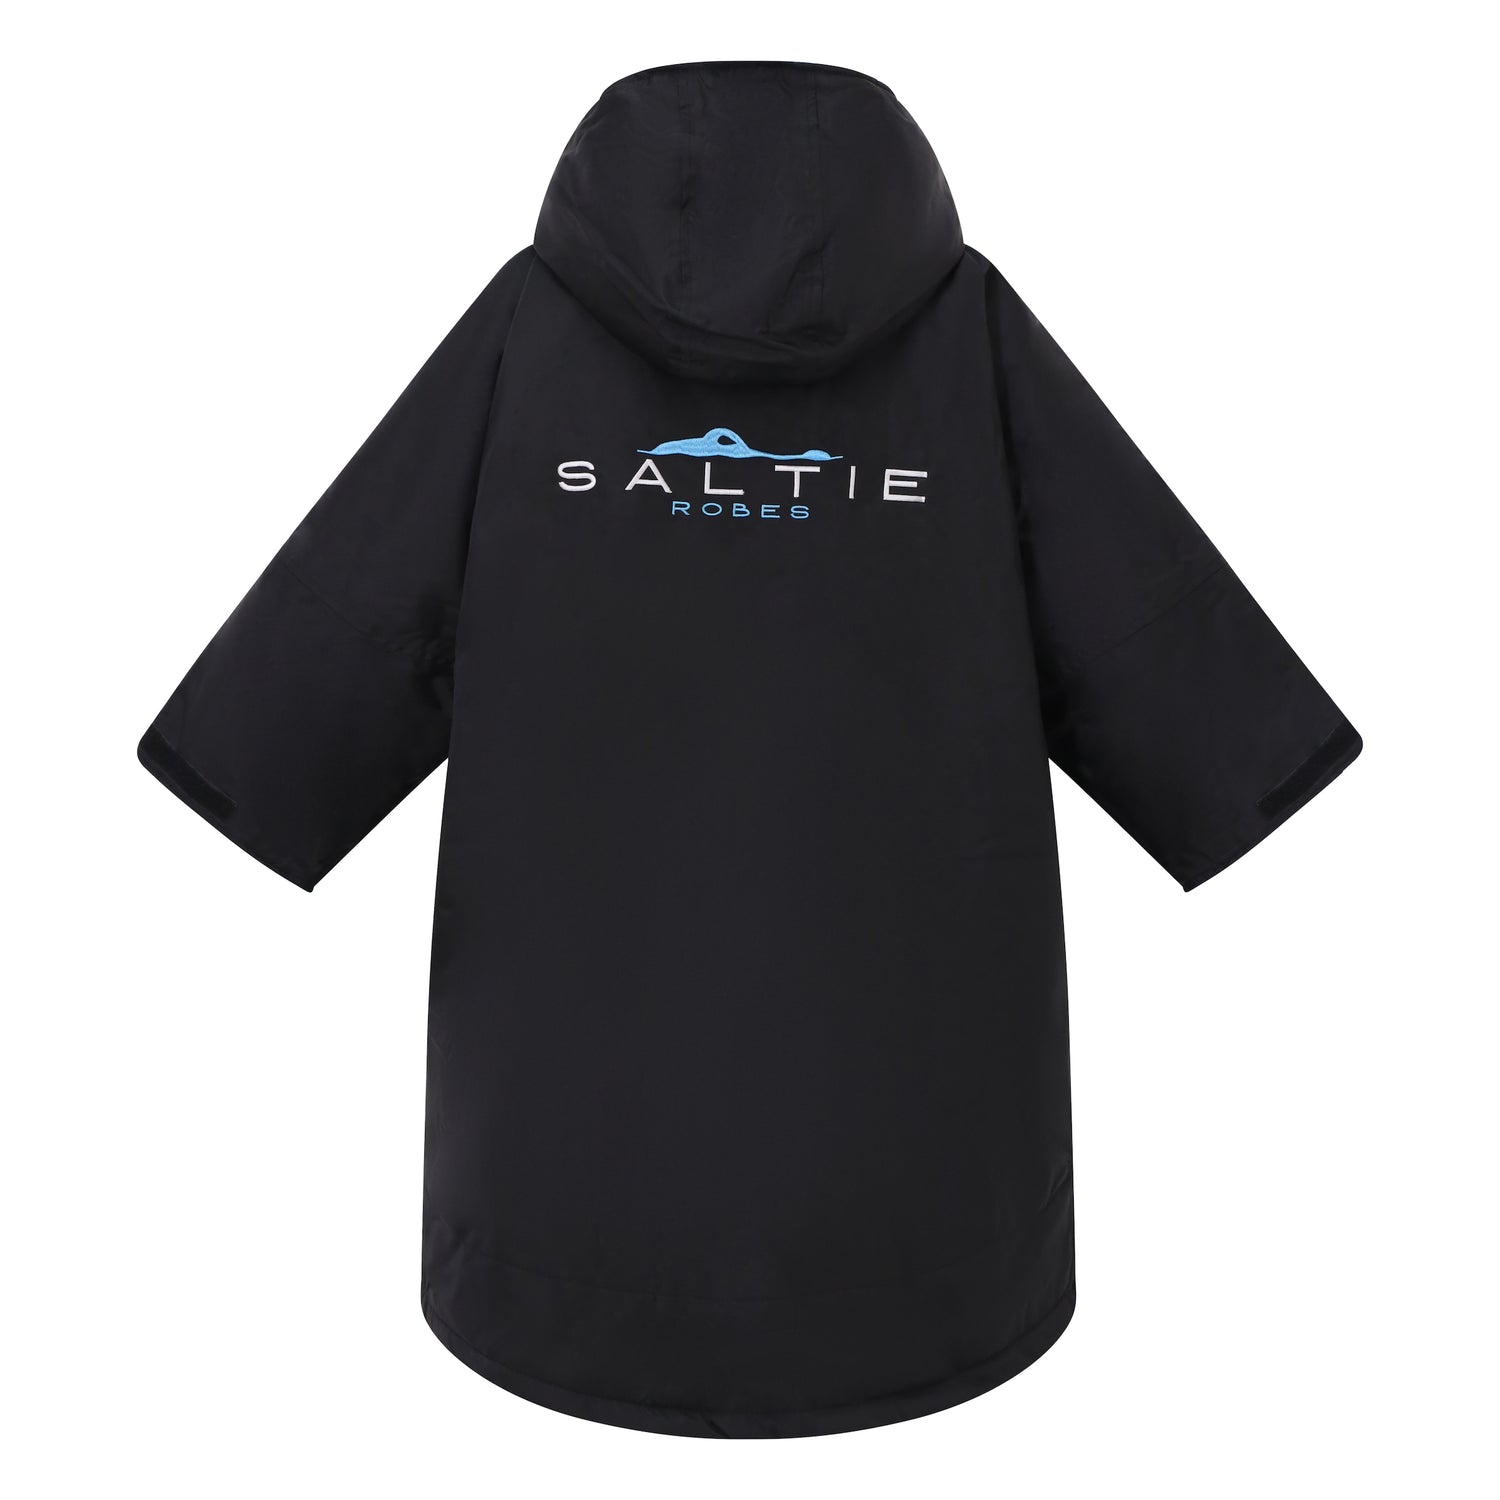 Saltie Junior Changing Robe - Black/Cyan